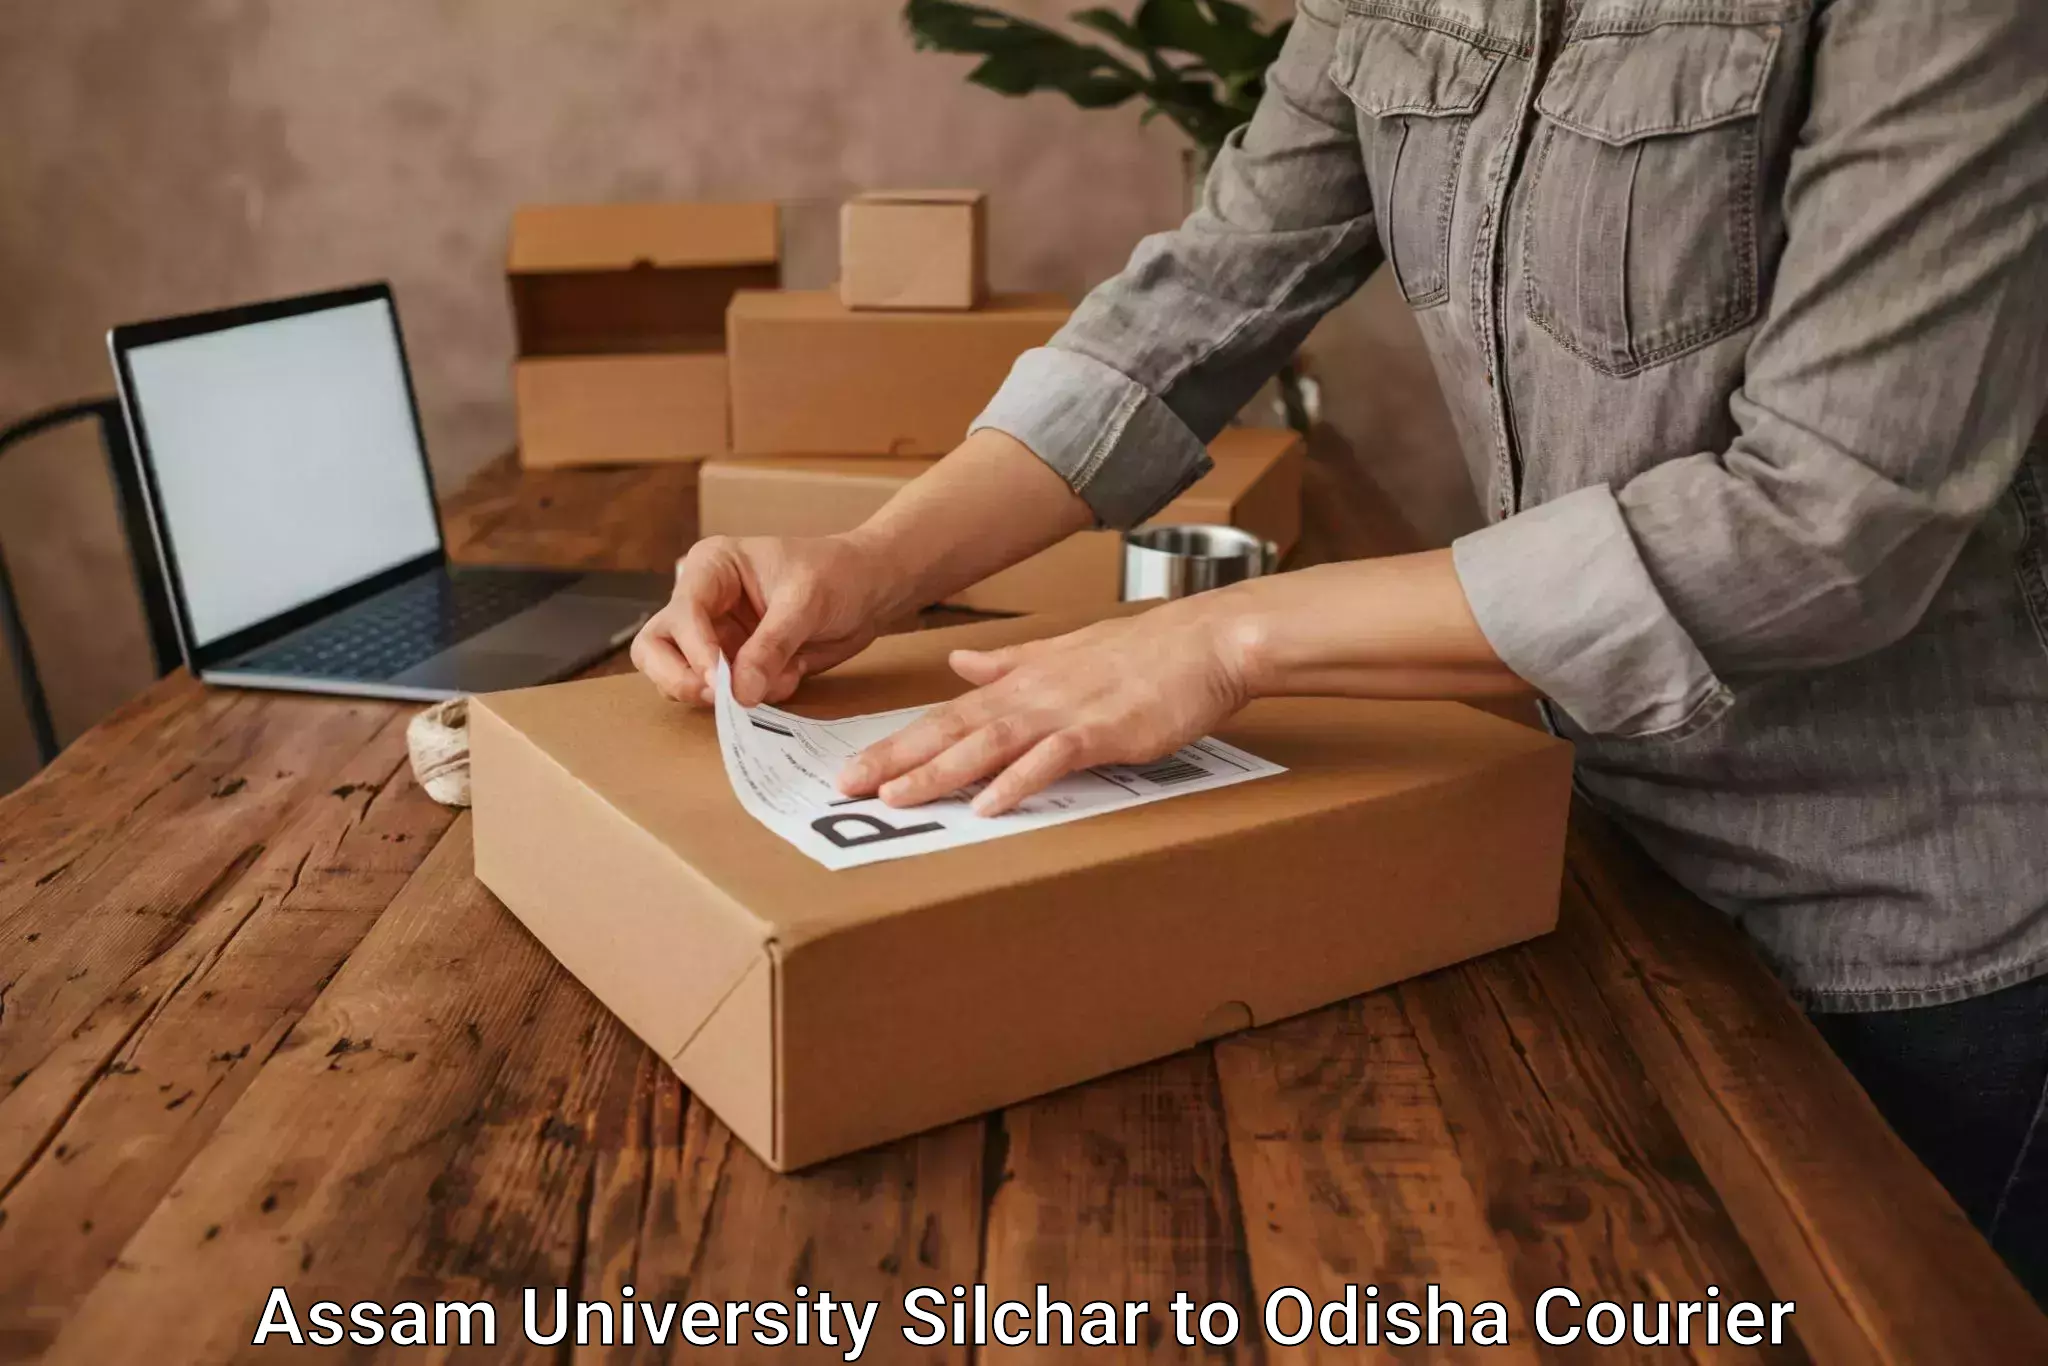 Local delivery service Assam University Silchar to Jaipatna